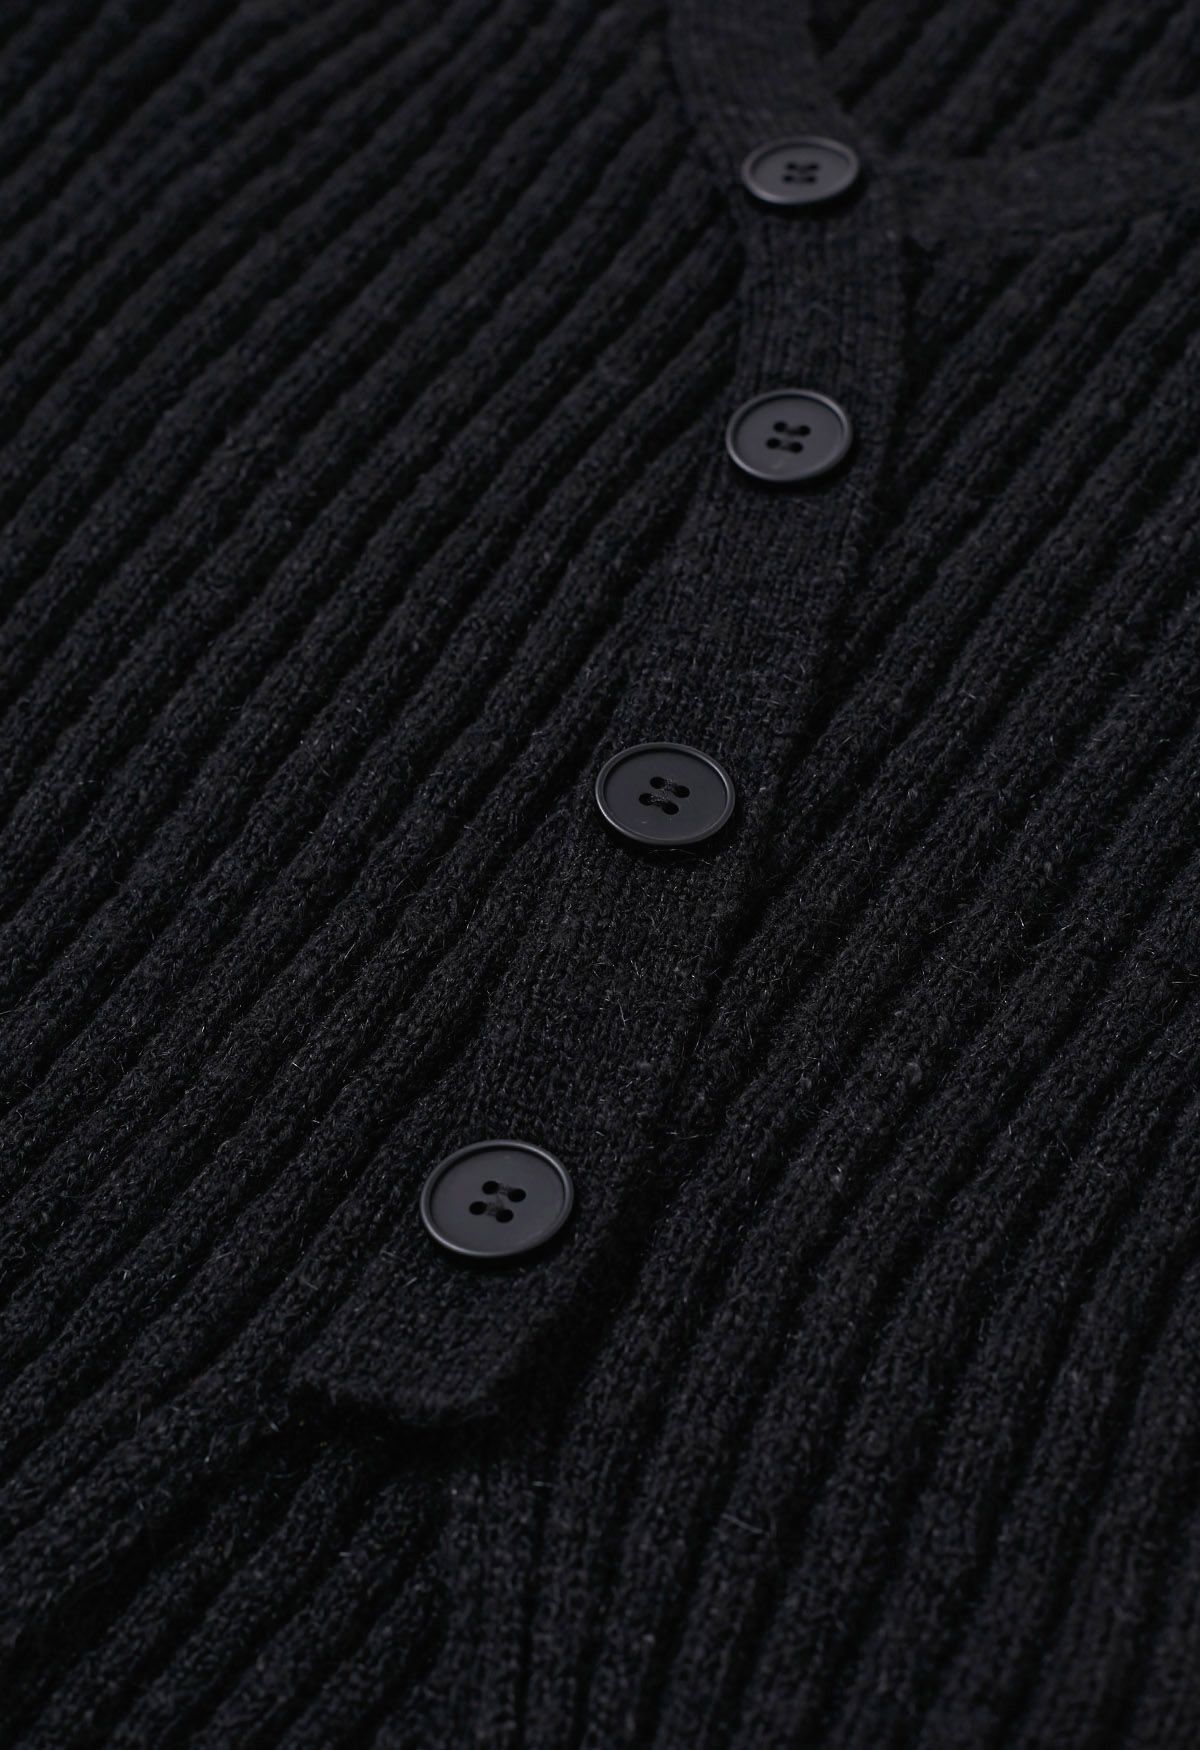 Button Trim Slit Hem Ribbed Knit Top in Black